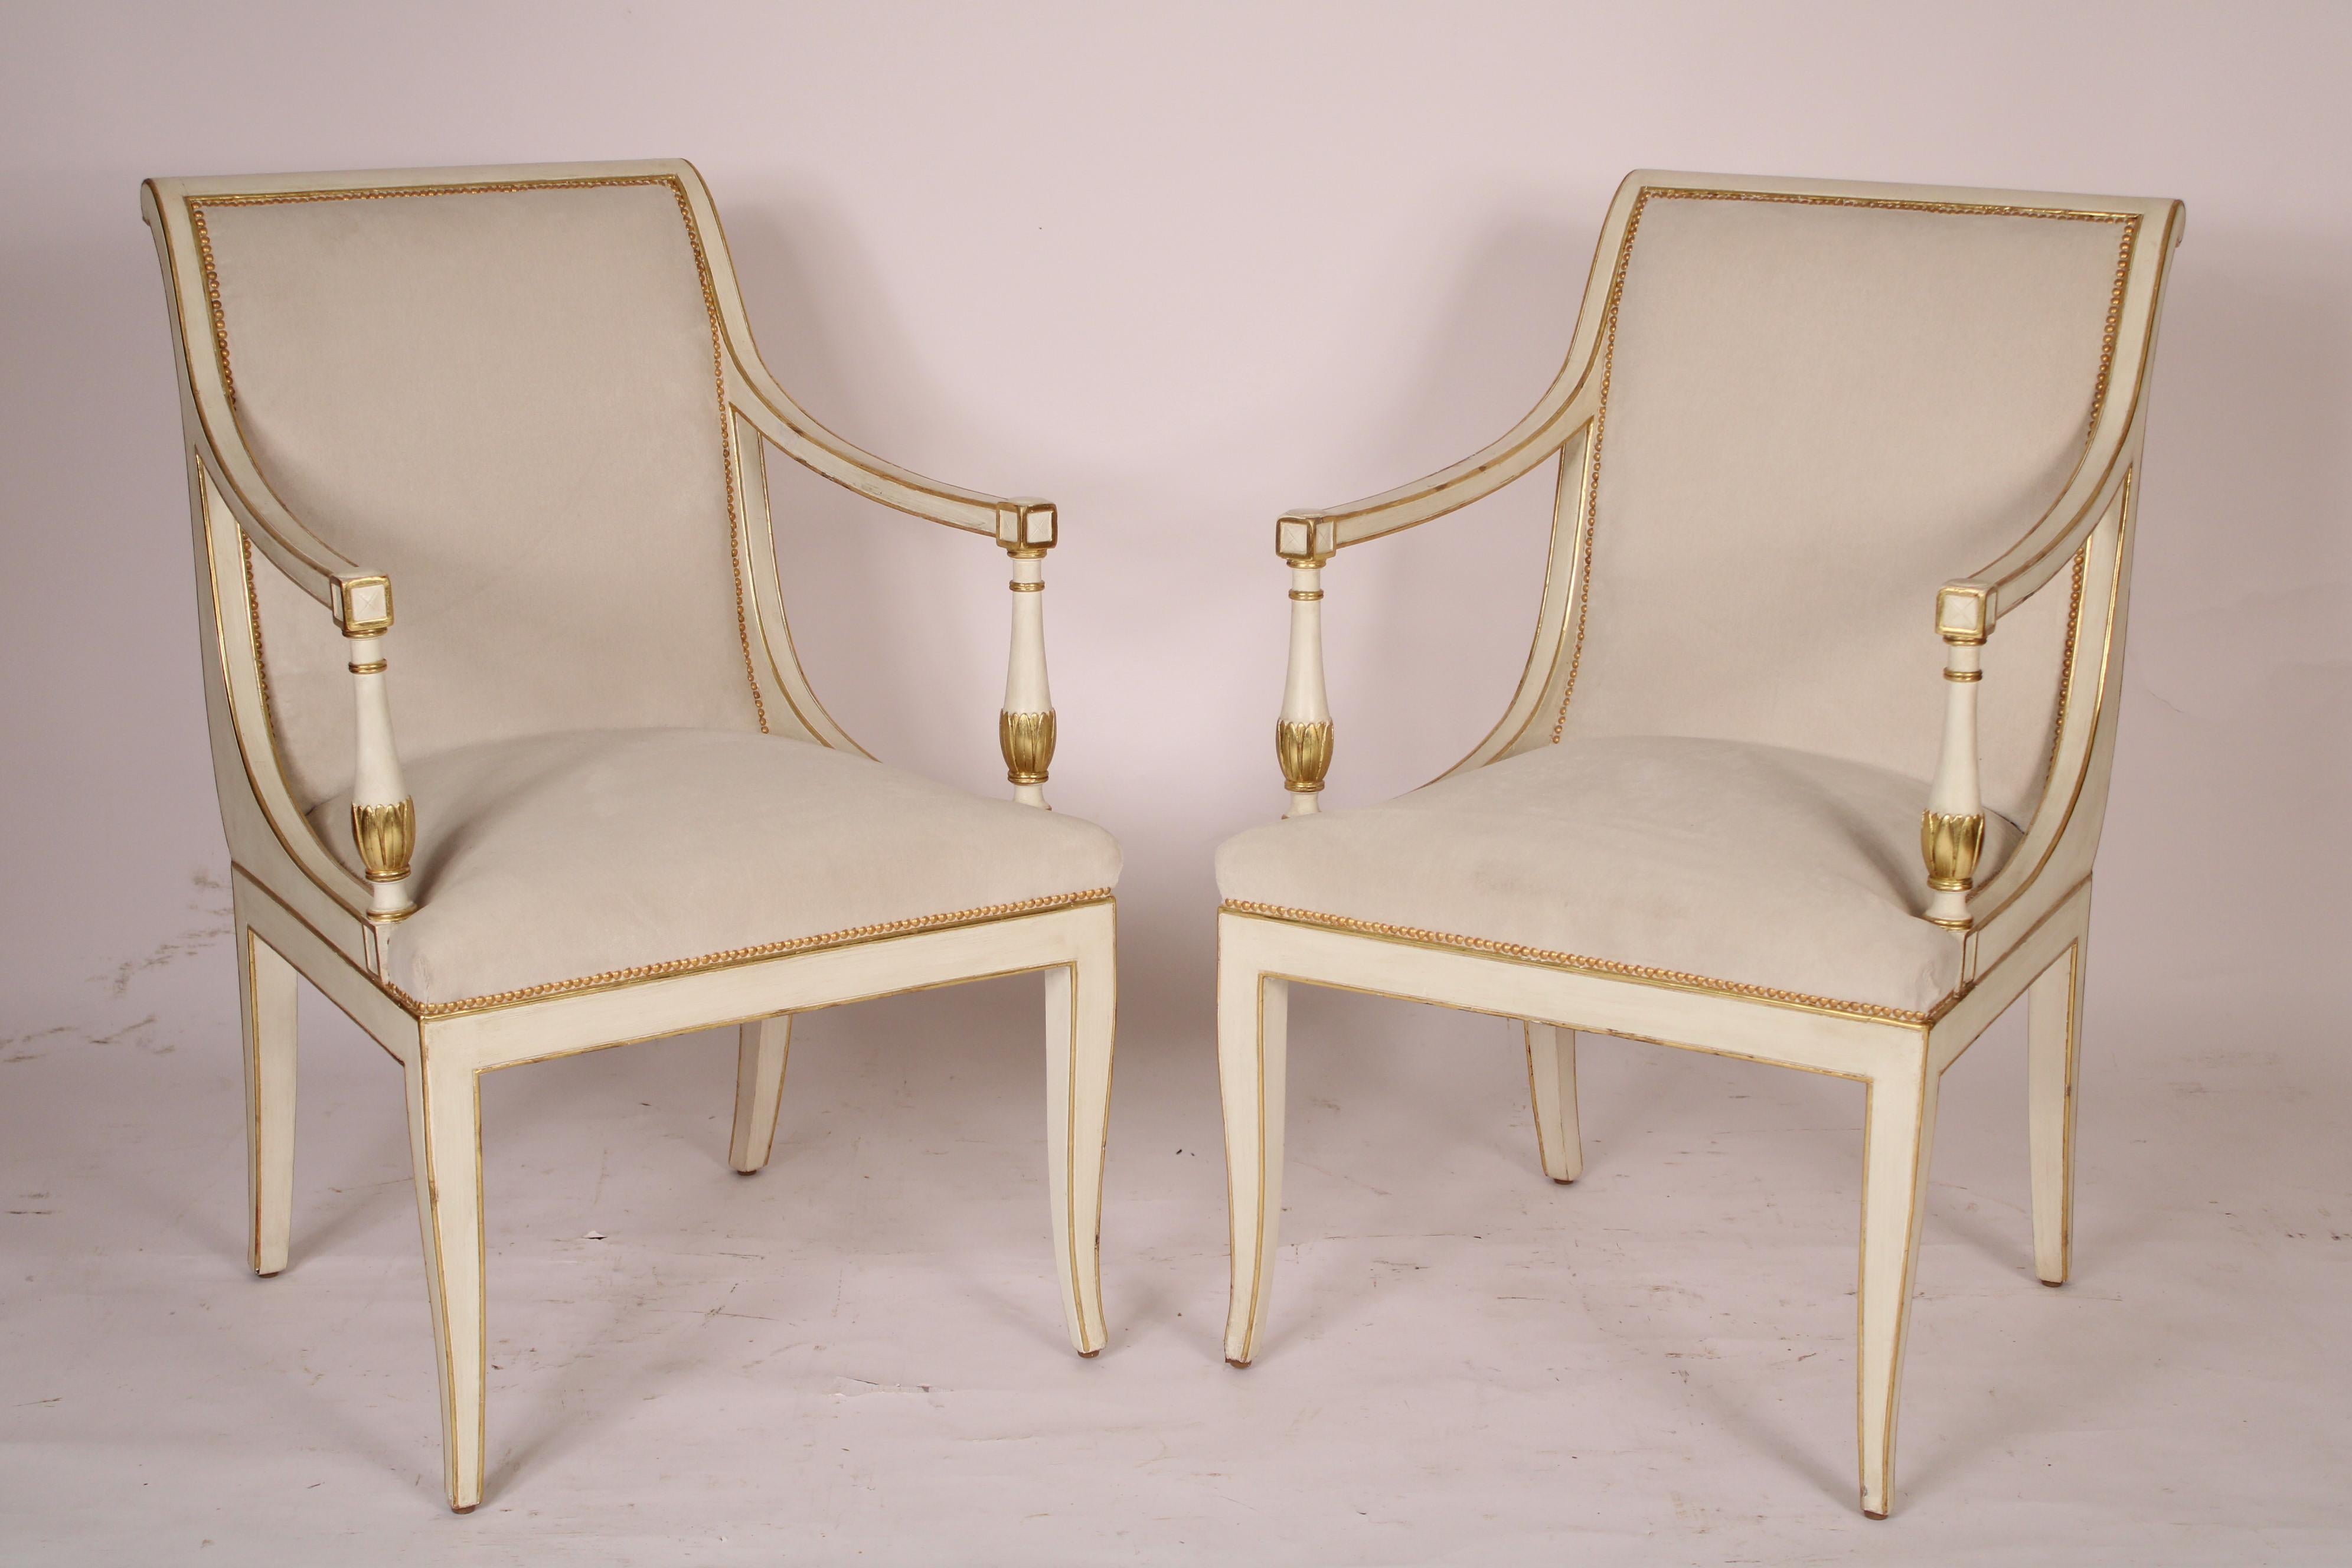 Paar nordeuropäische Sessel im neoklassizistischen Stil, bemalt und vergoldet, ca. 1970er Jahre. Mit rollenförmiger Kammleiste, serpentinenförmigem Rücken  von der Seite gesehen, gepolstert mit goldenem Nagelkopfbesatz,  nach unten geschwungene Arme